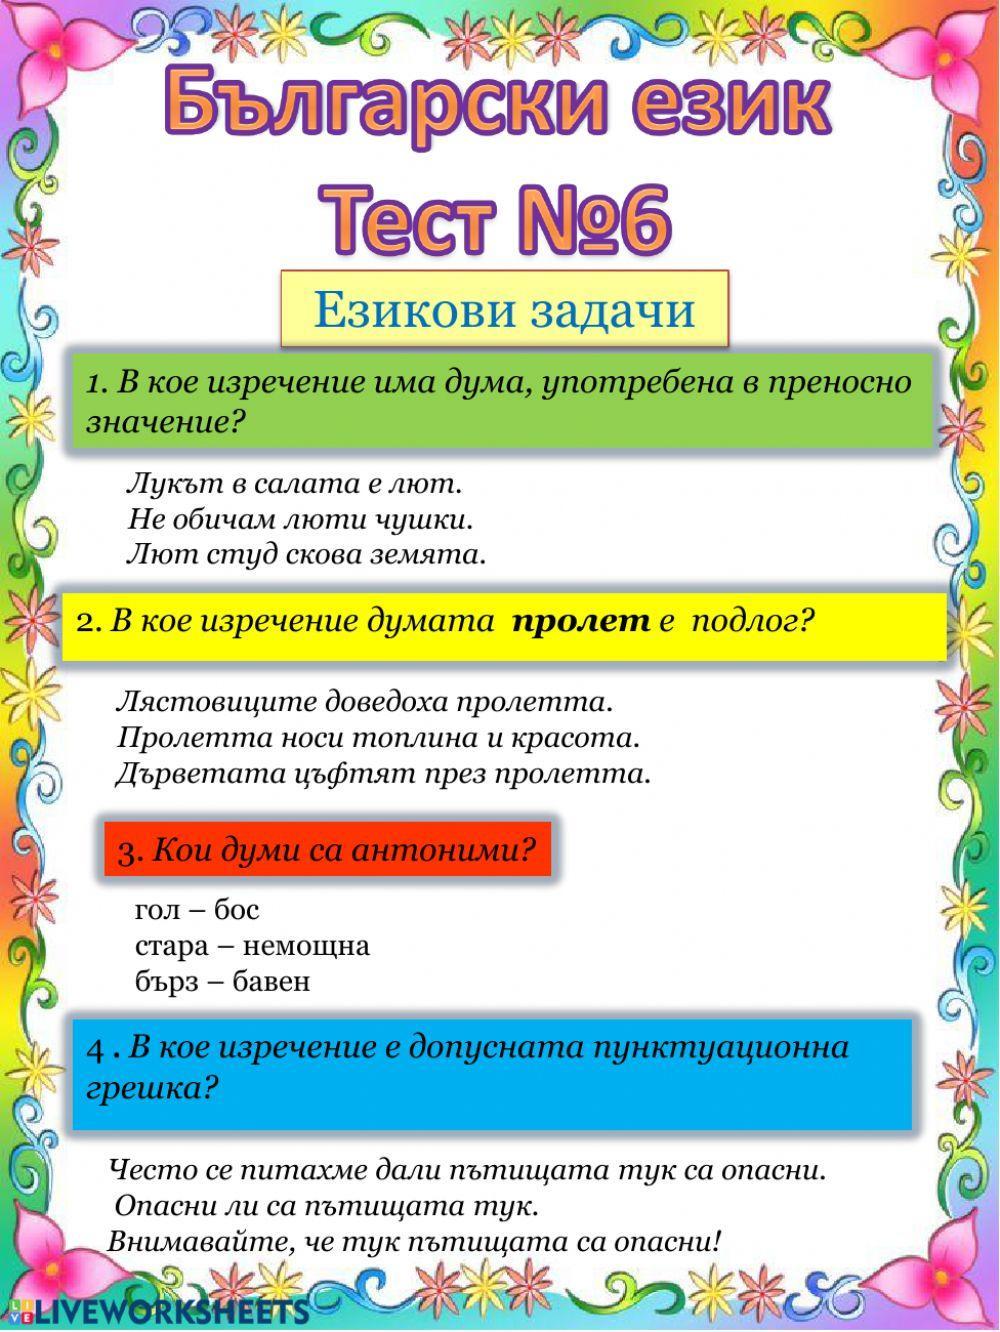 Български език Тест №6